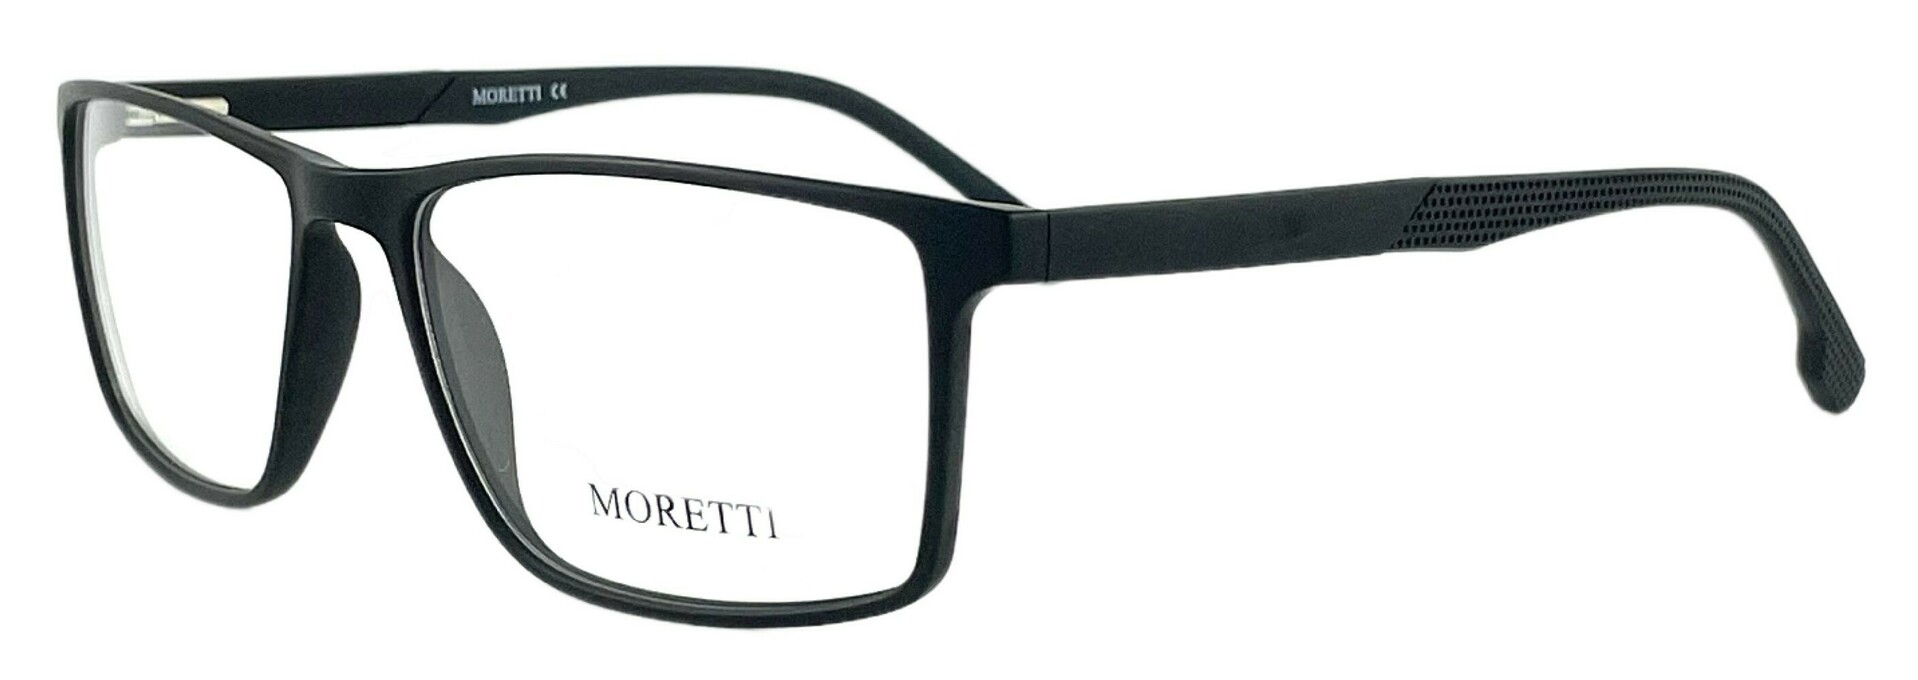 Moretti FB06-02 C.01 2